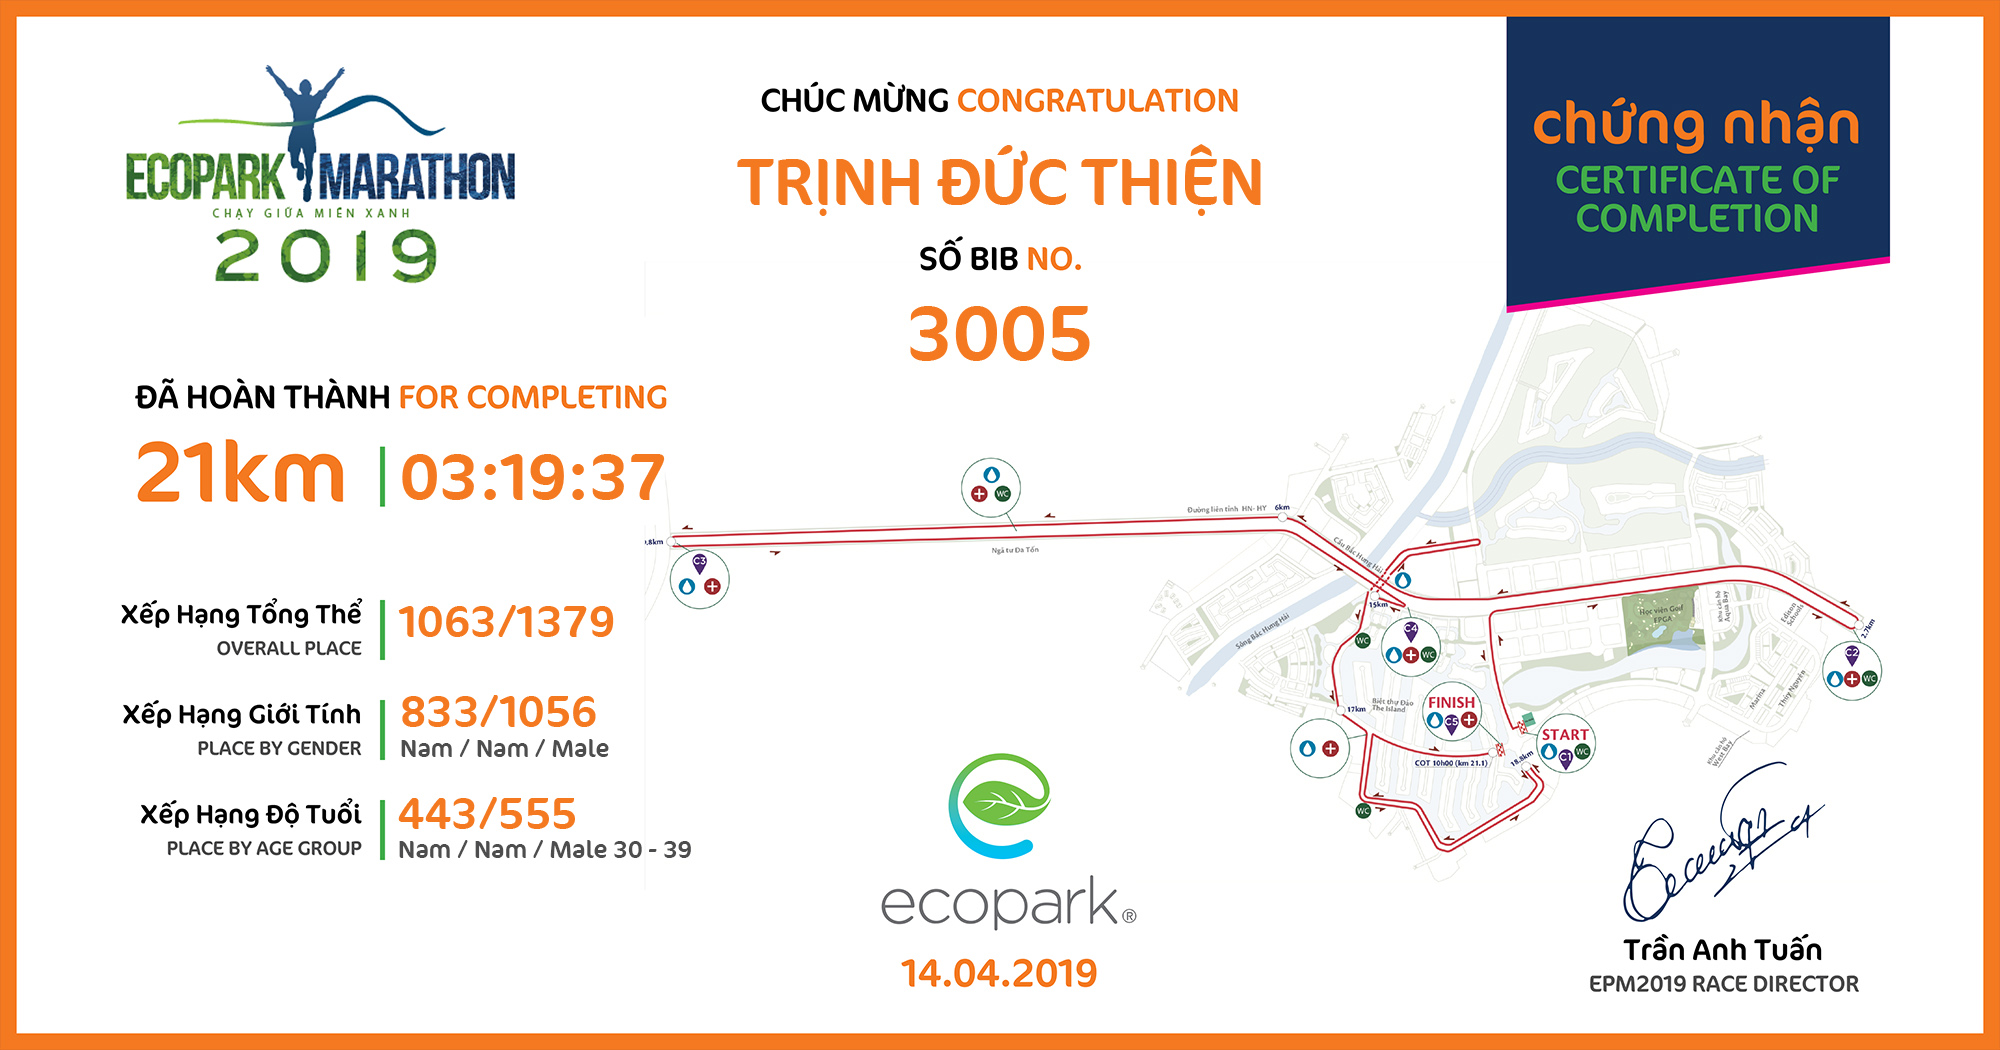 3005 - Trịnh Đức Thiện